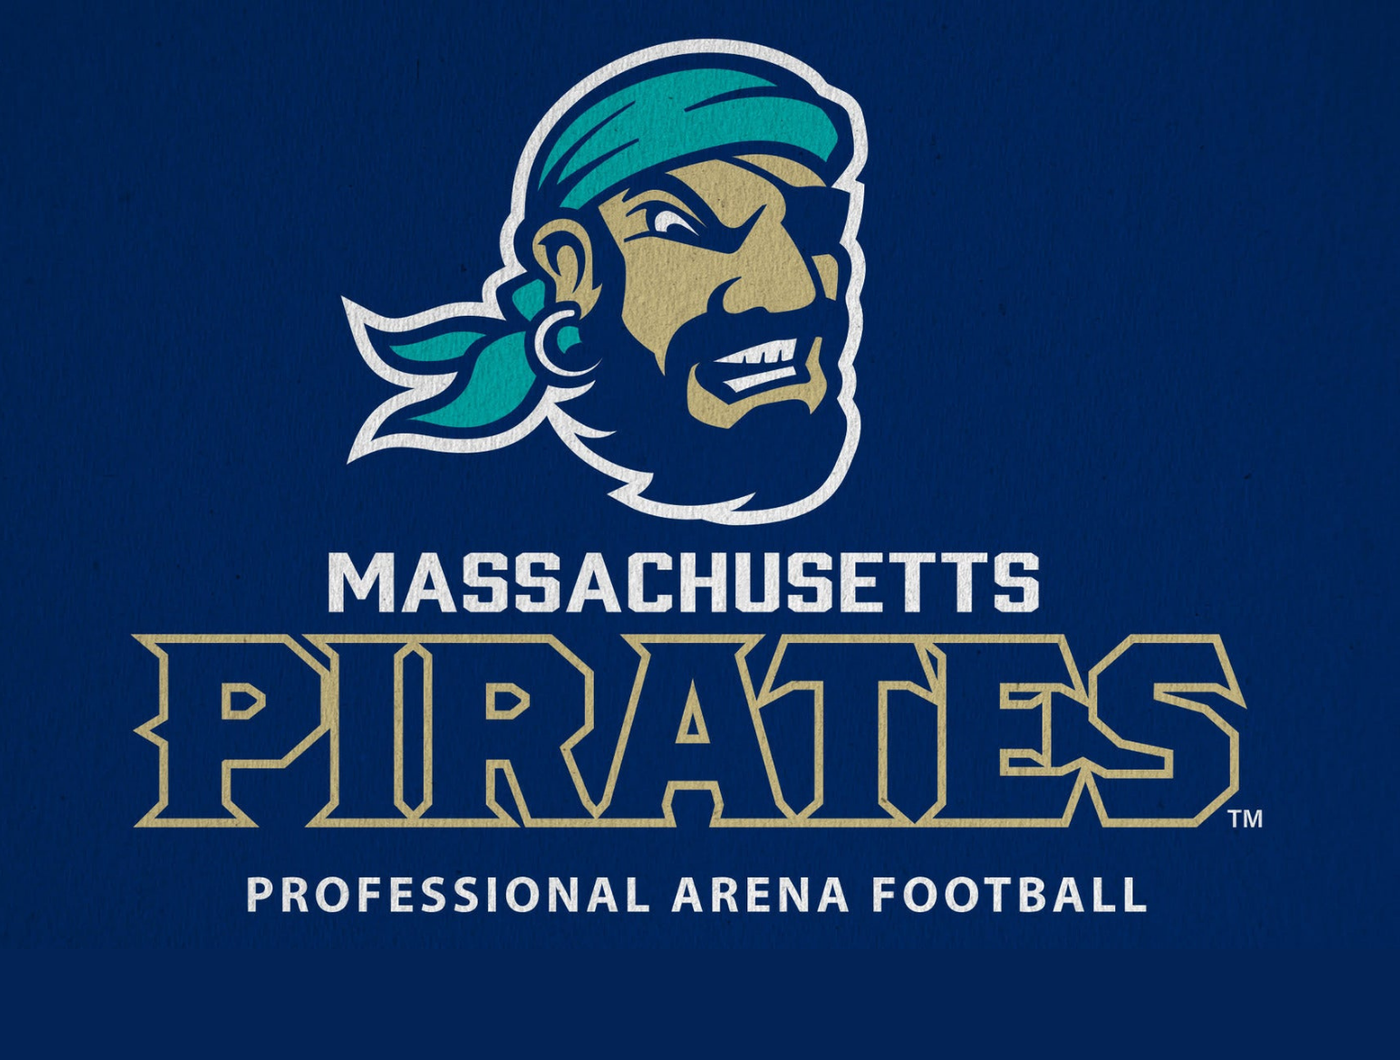 Massachusetts Pirates vs. Iowa Barnstormers